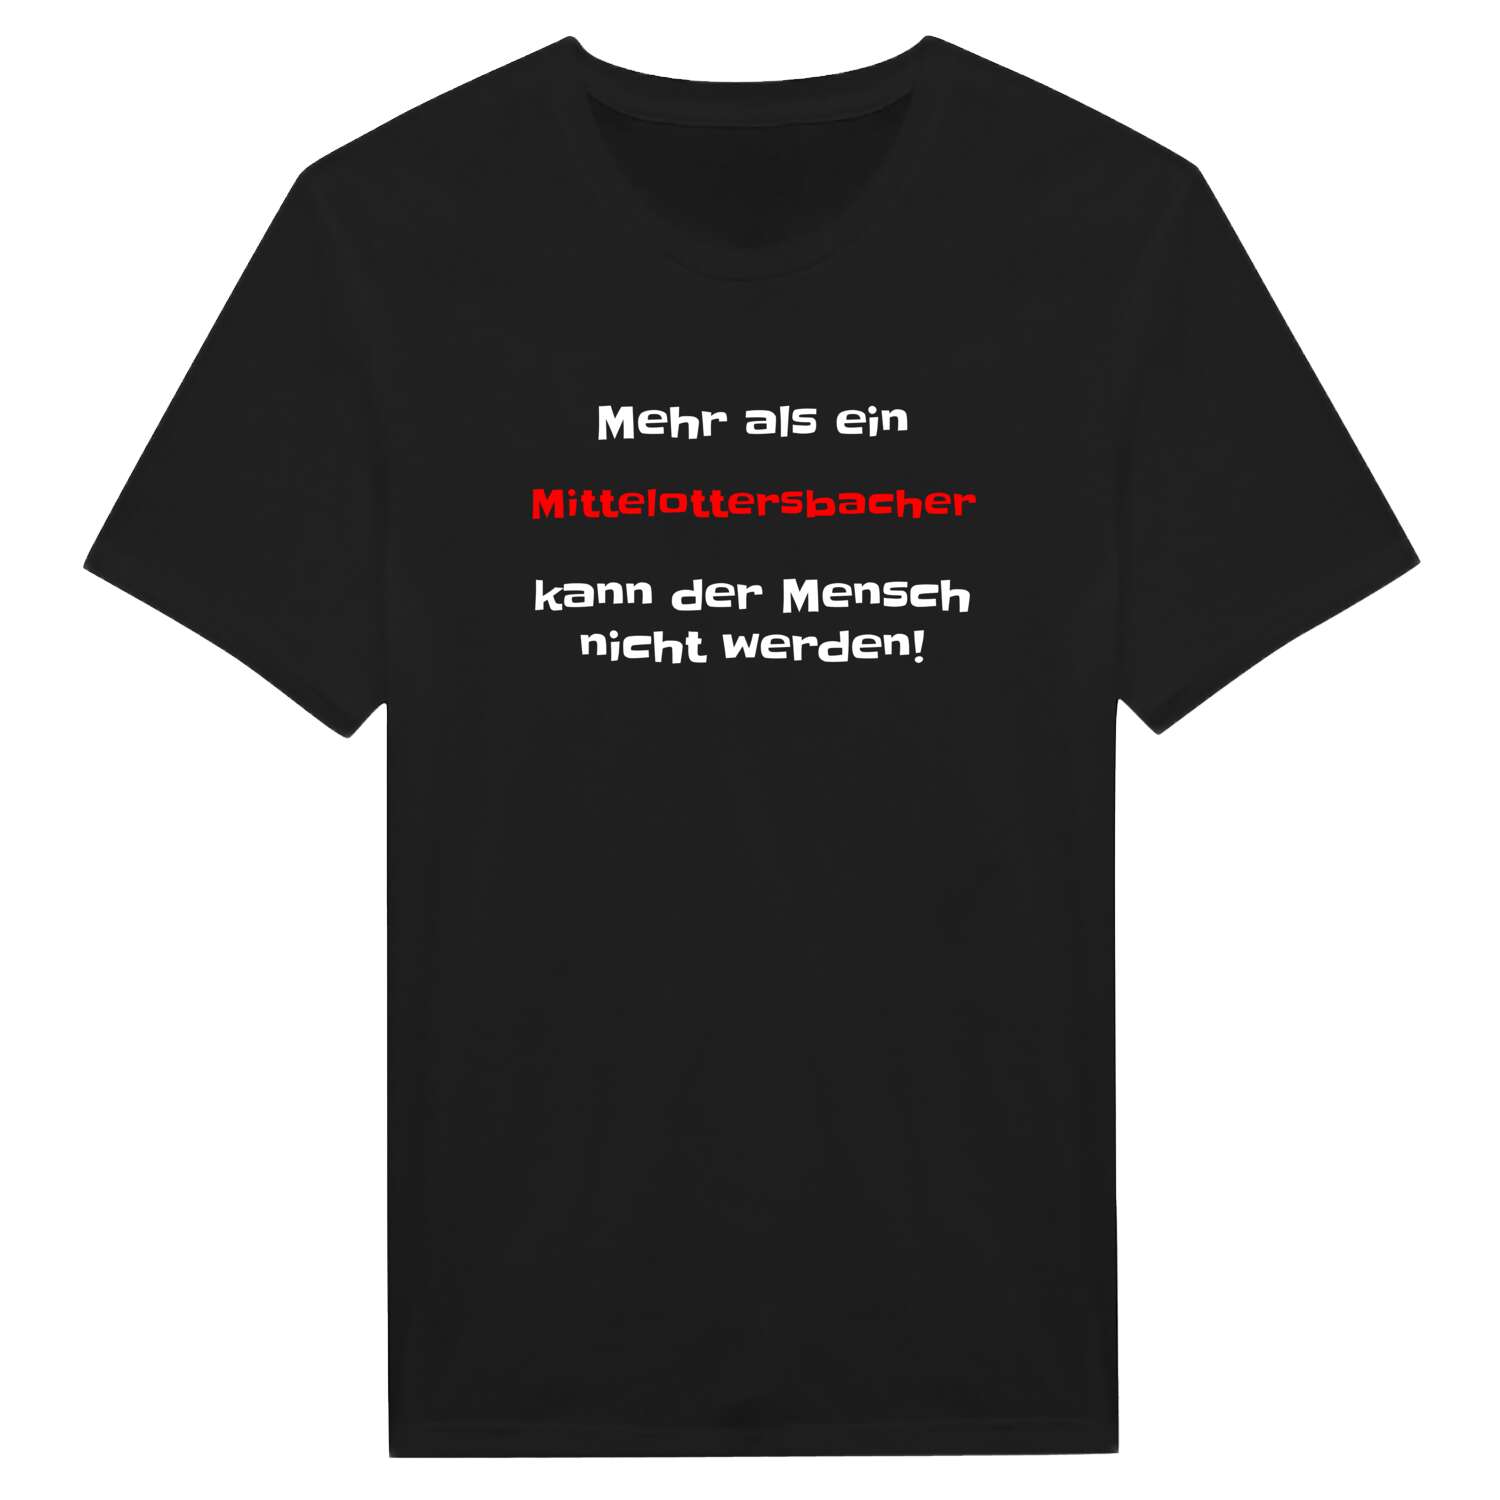 Mittelottersbach T-Shirt »Mehr als ein«